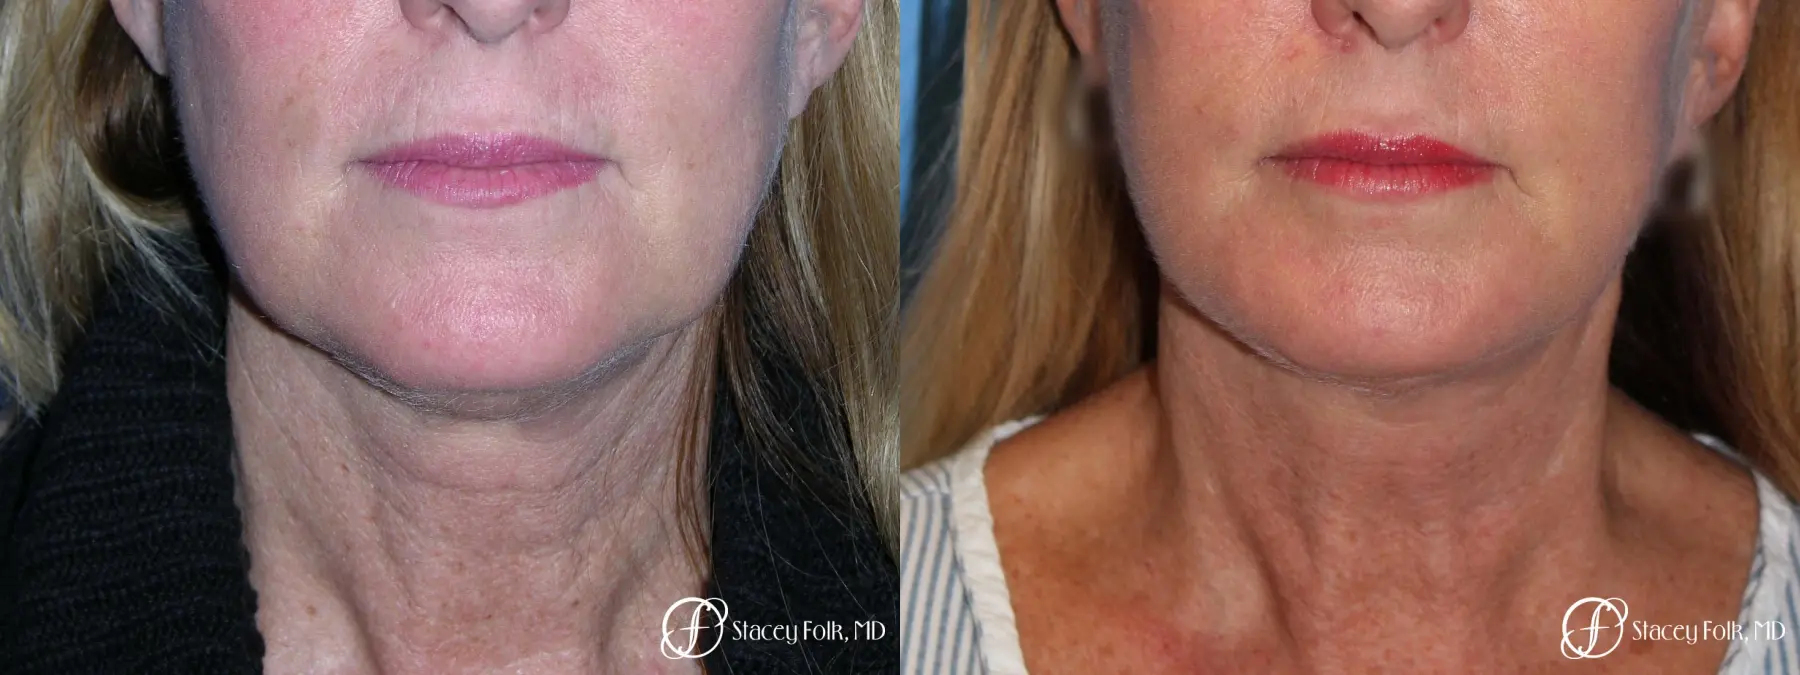 Denver Facial Rejuvenation 7916 - Before and After 1